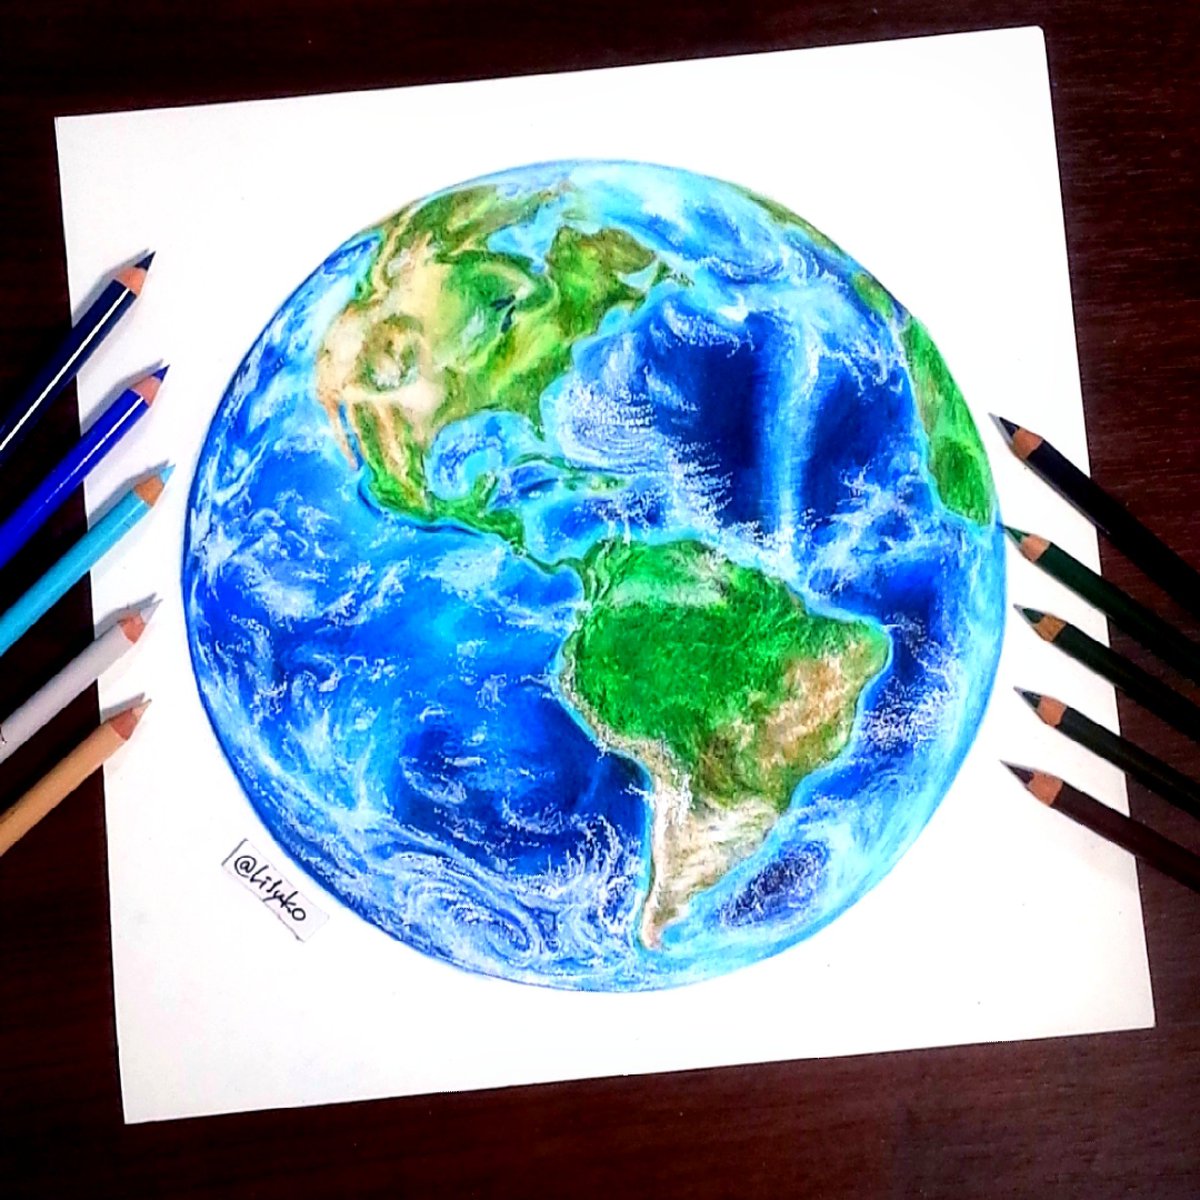 りりぃ てとら 色鉛筆画 美しい地球を描きたくて 描いたはいいけど載せるの忘れてて 今頃w 大陸は割と細かく描き込んだけど見事に潰れた 綺麗なﾌﾞﾙｰが出せて良かった 地球万歳 色鉛筆 地球 Drawing Earth T Co J9xz8bqgmh Twitter